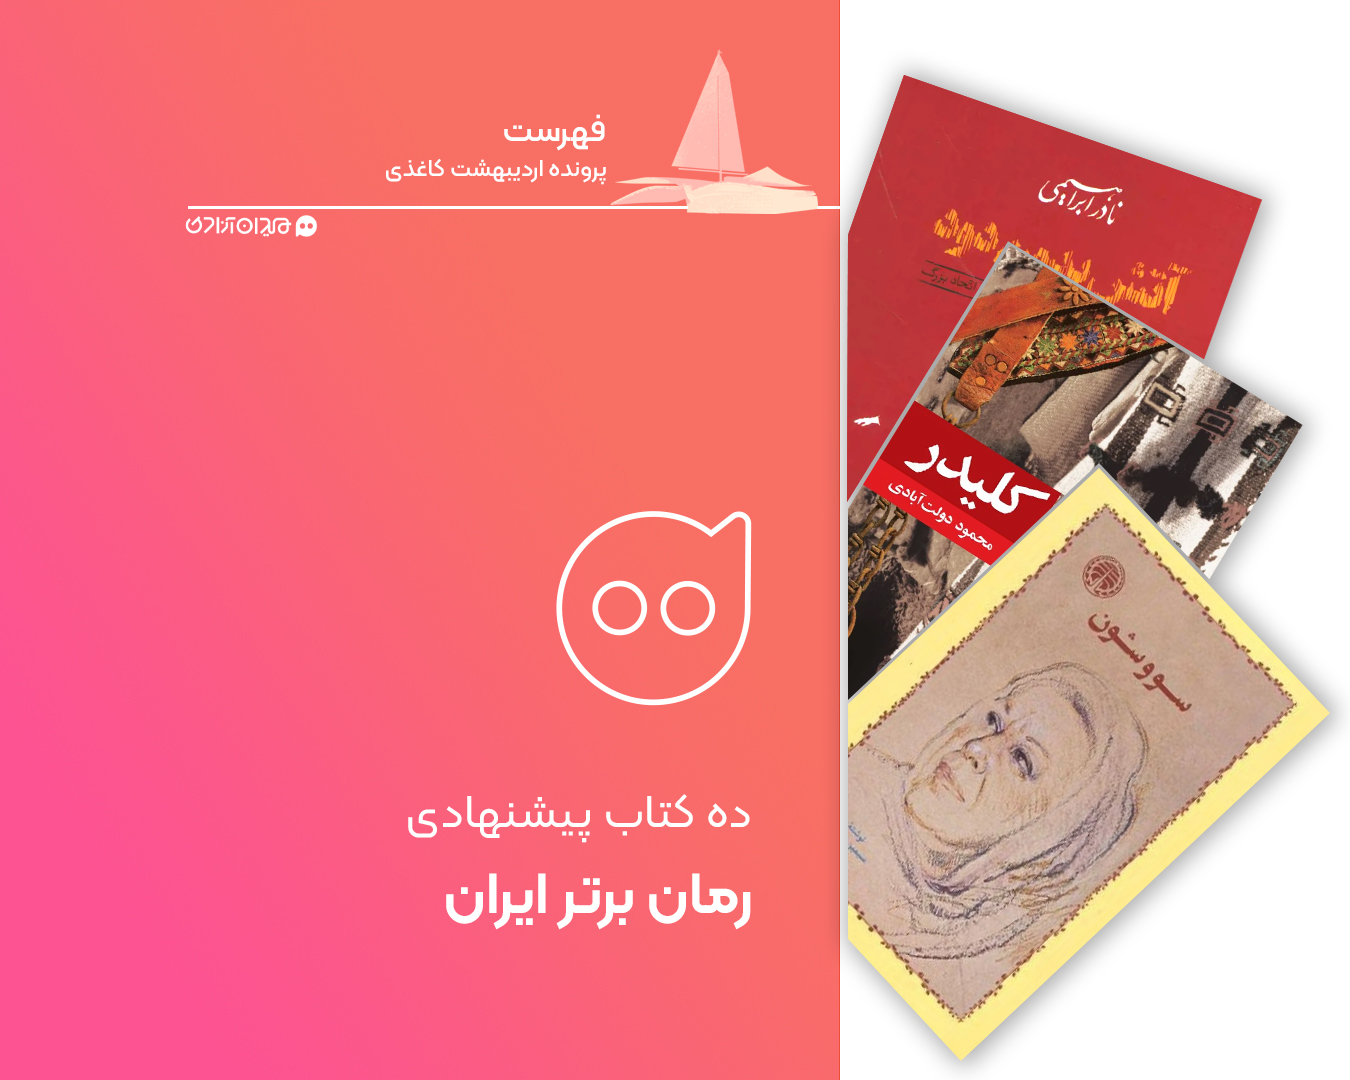  فهرست: ده رمان از برترین و مهم‌ترین رمان‌های ایرانی، برای خرید از نمایشگاه کتاب تهران